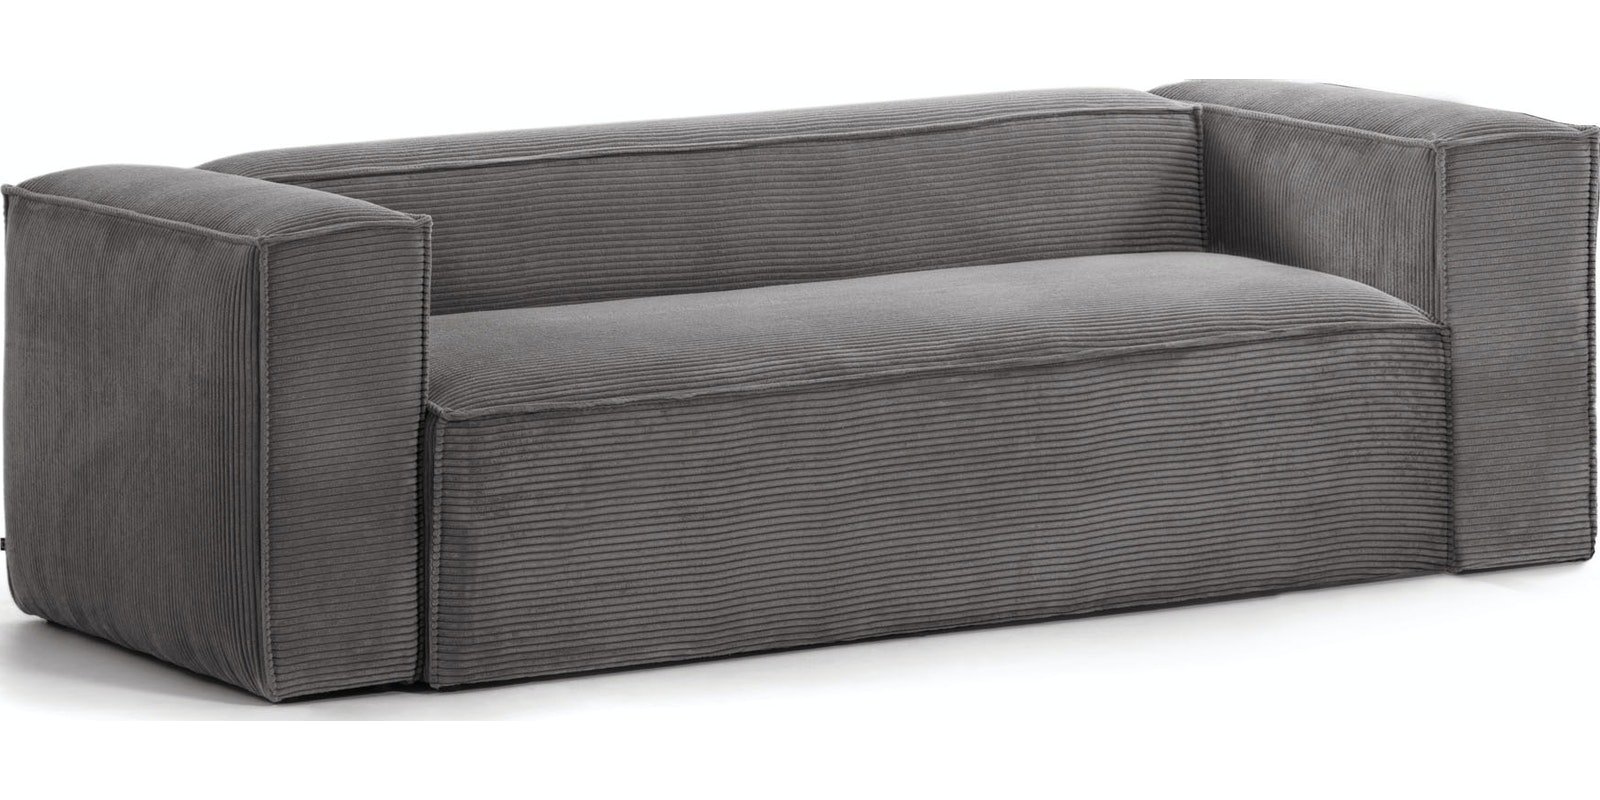 Blok, 3-personers sofa, Fjøjl by LaForma (H: 69 cm. x B: 210 cm. x L: 100 cm., Grå)